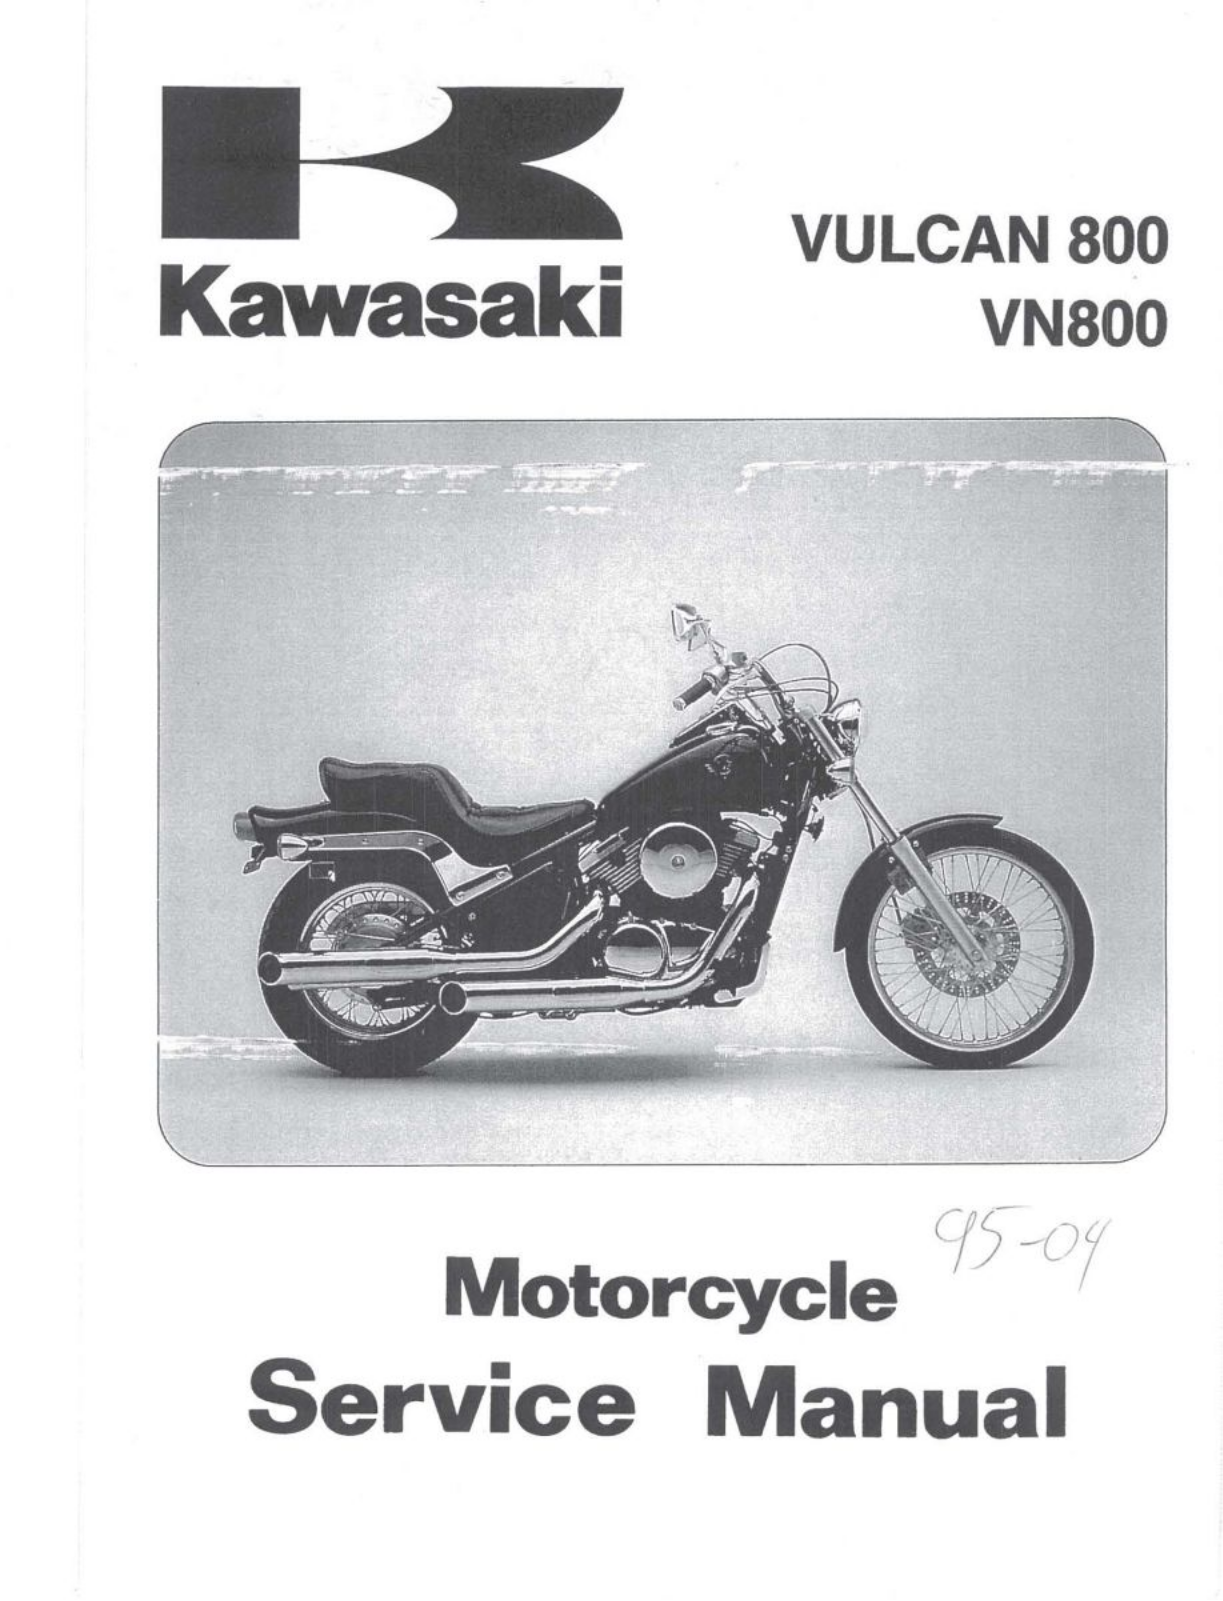 Kawasaki VN800 User Manual